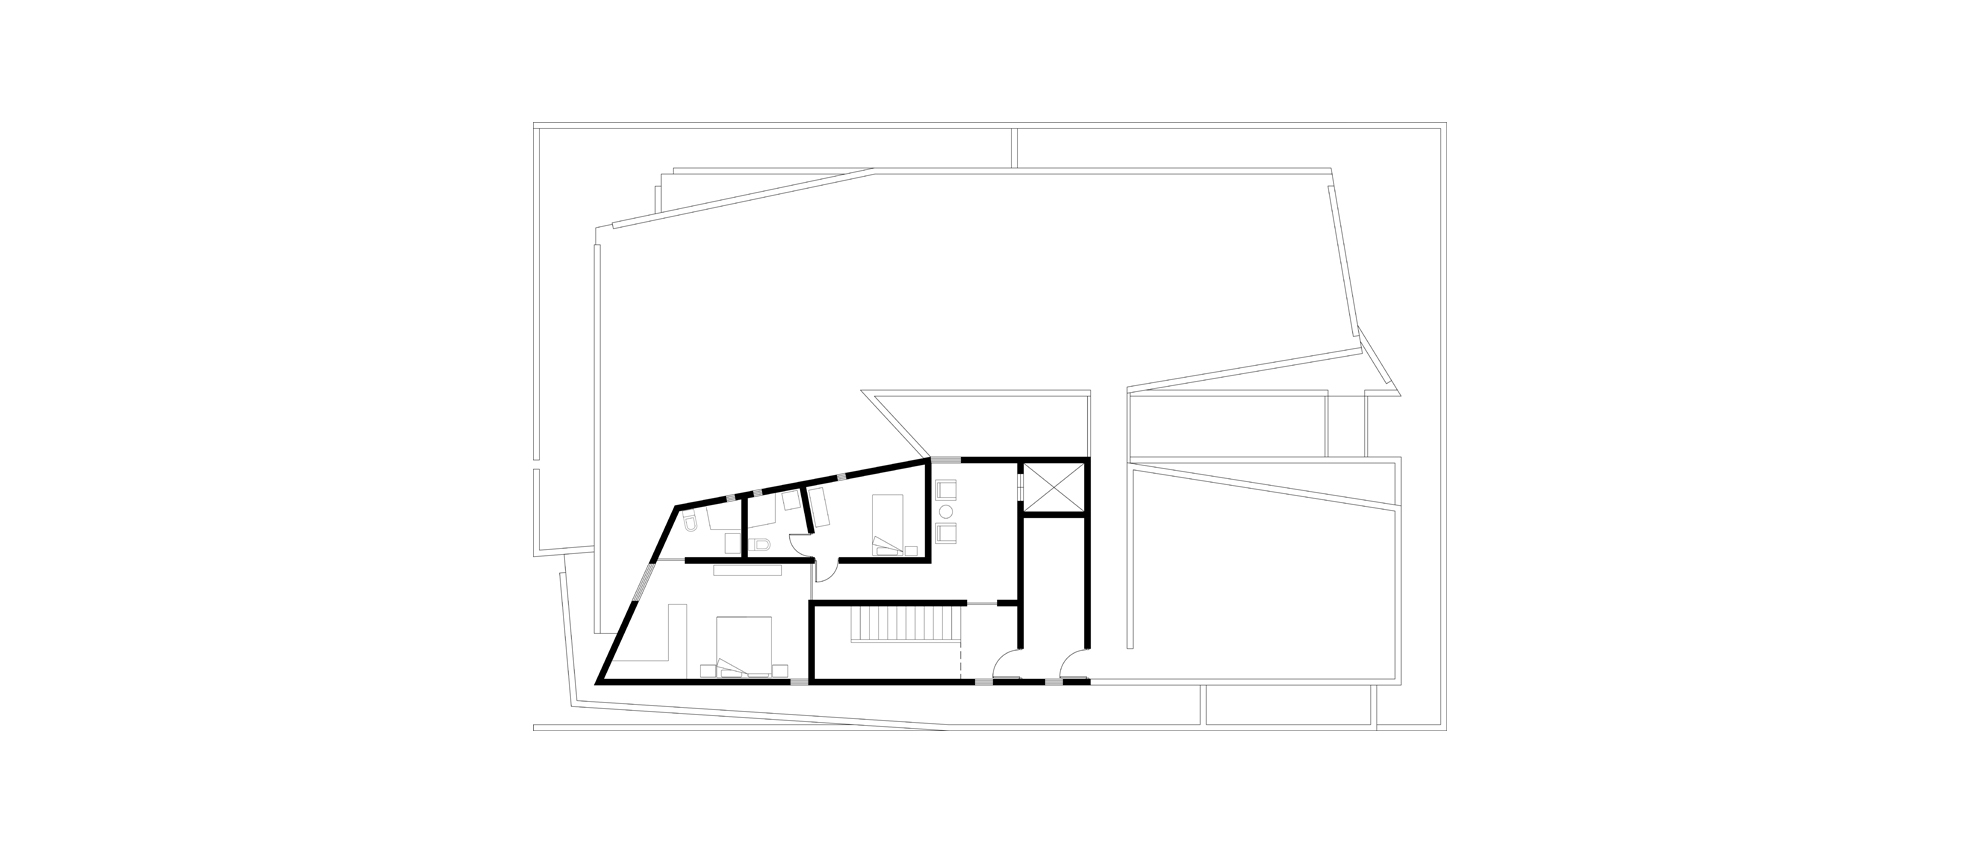 1Roof Floor Plan